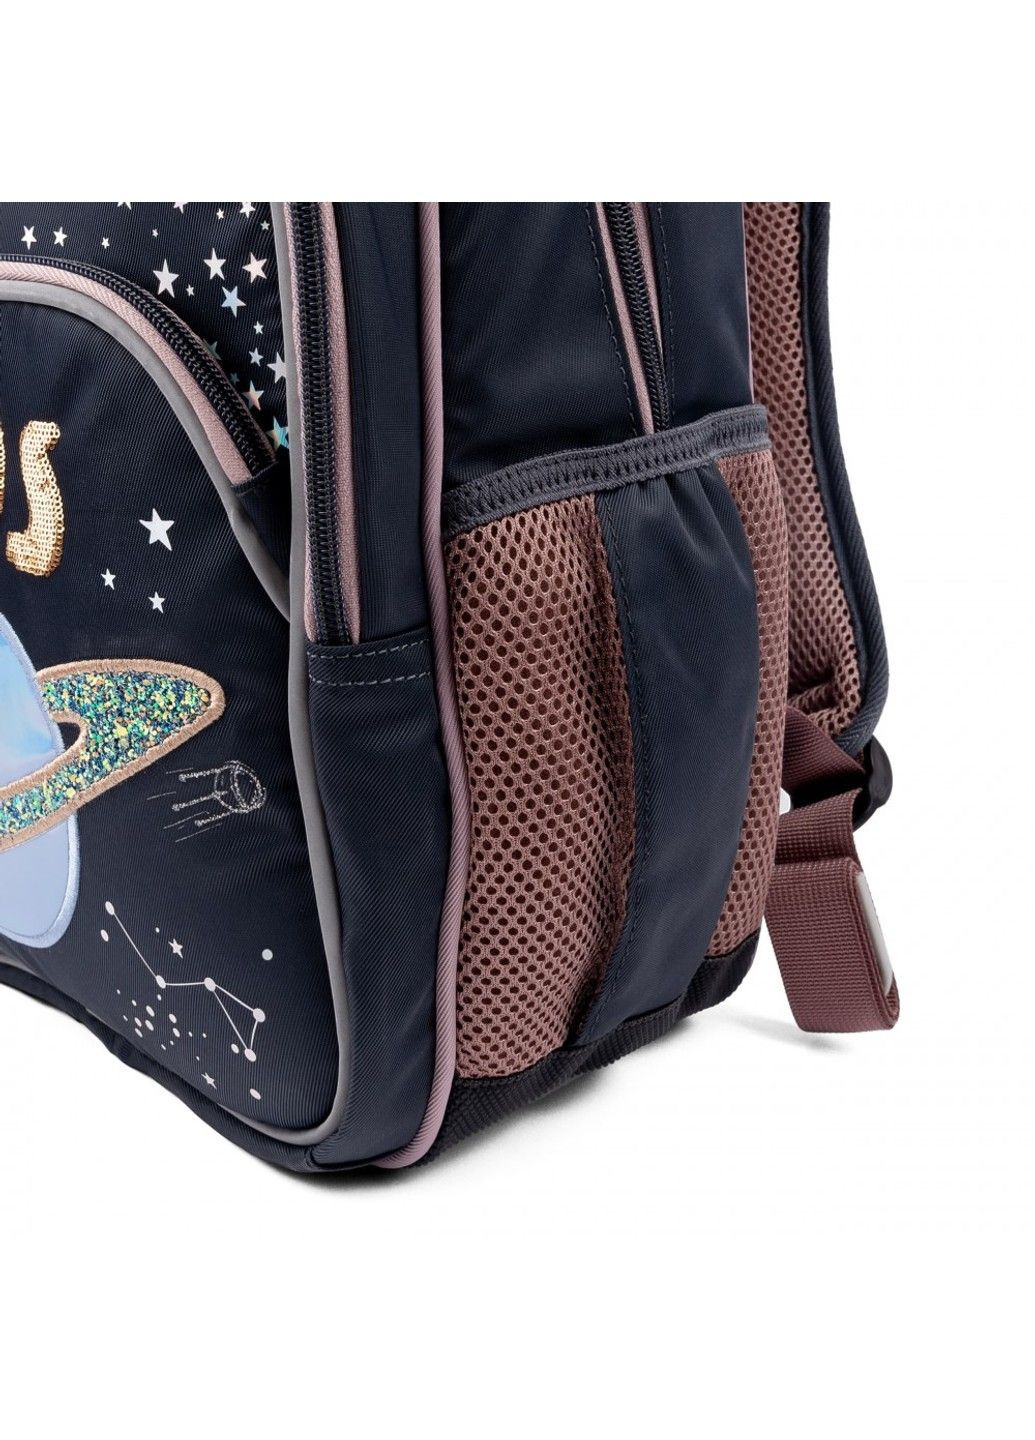 Шкільний рюкзак для молодших класів S-40 Cosmos Yes (278404480)